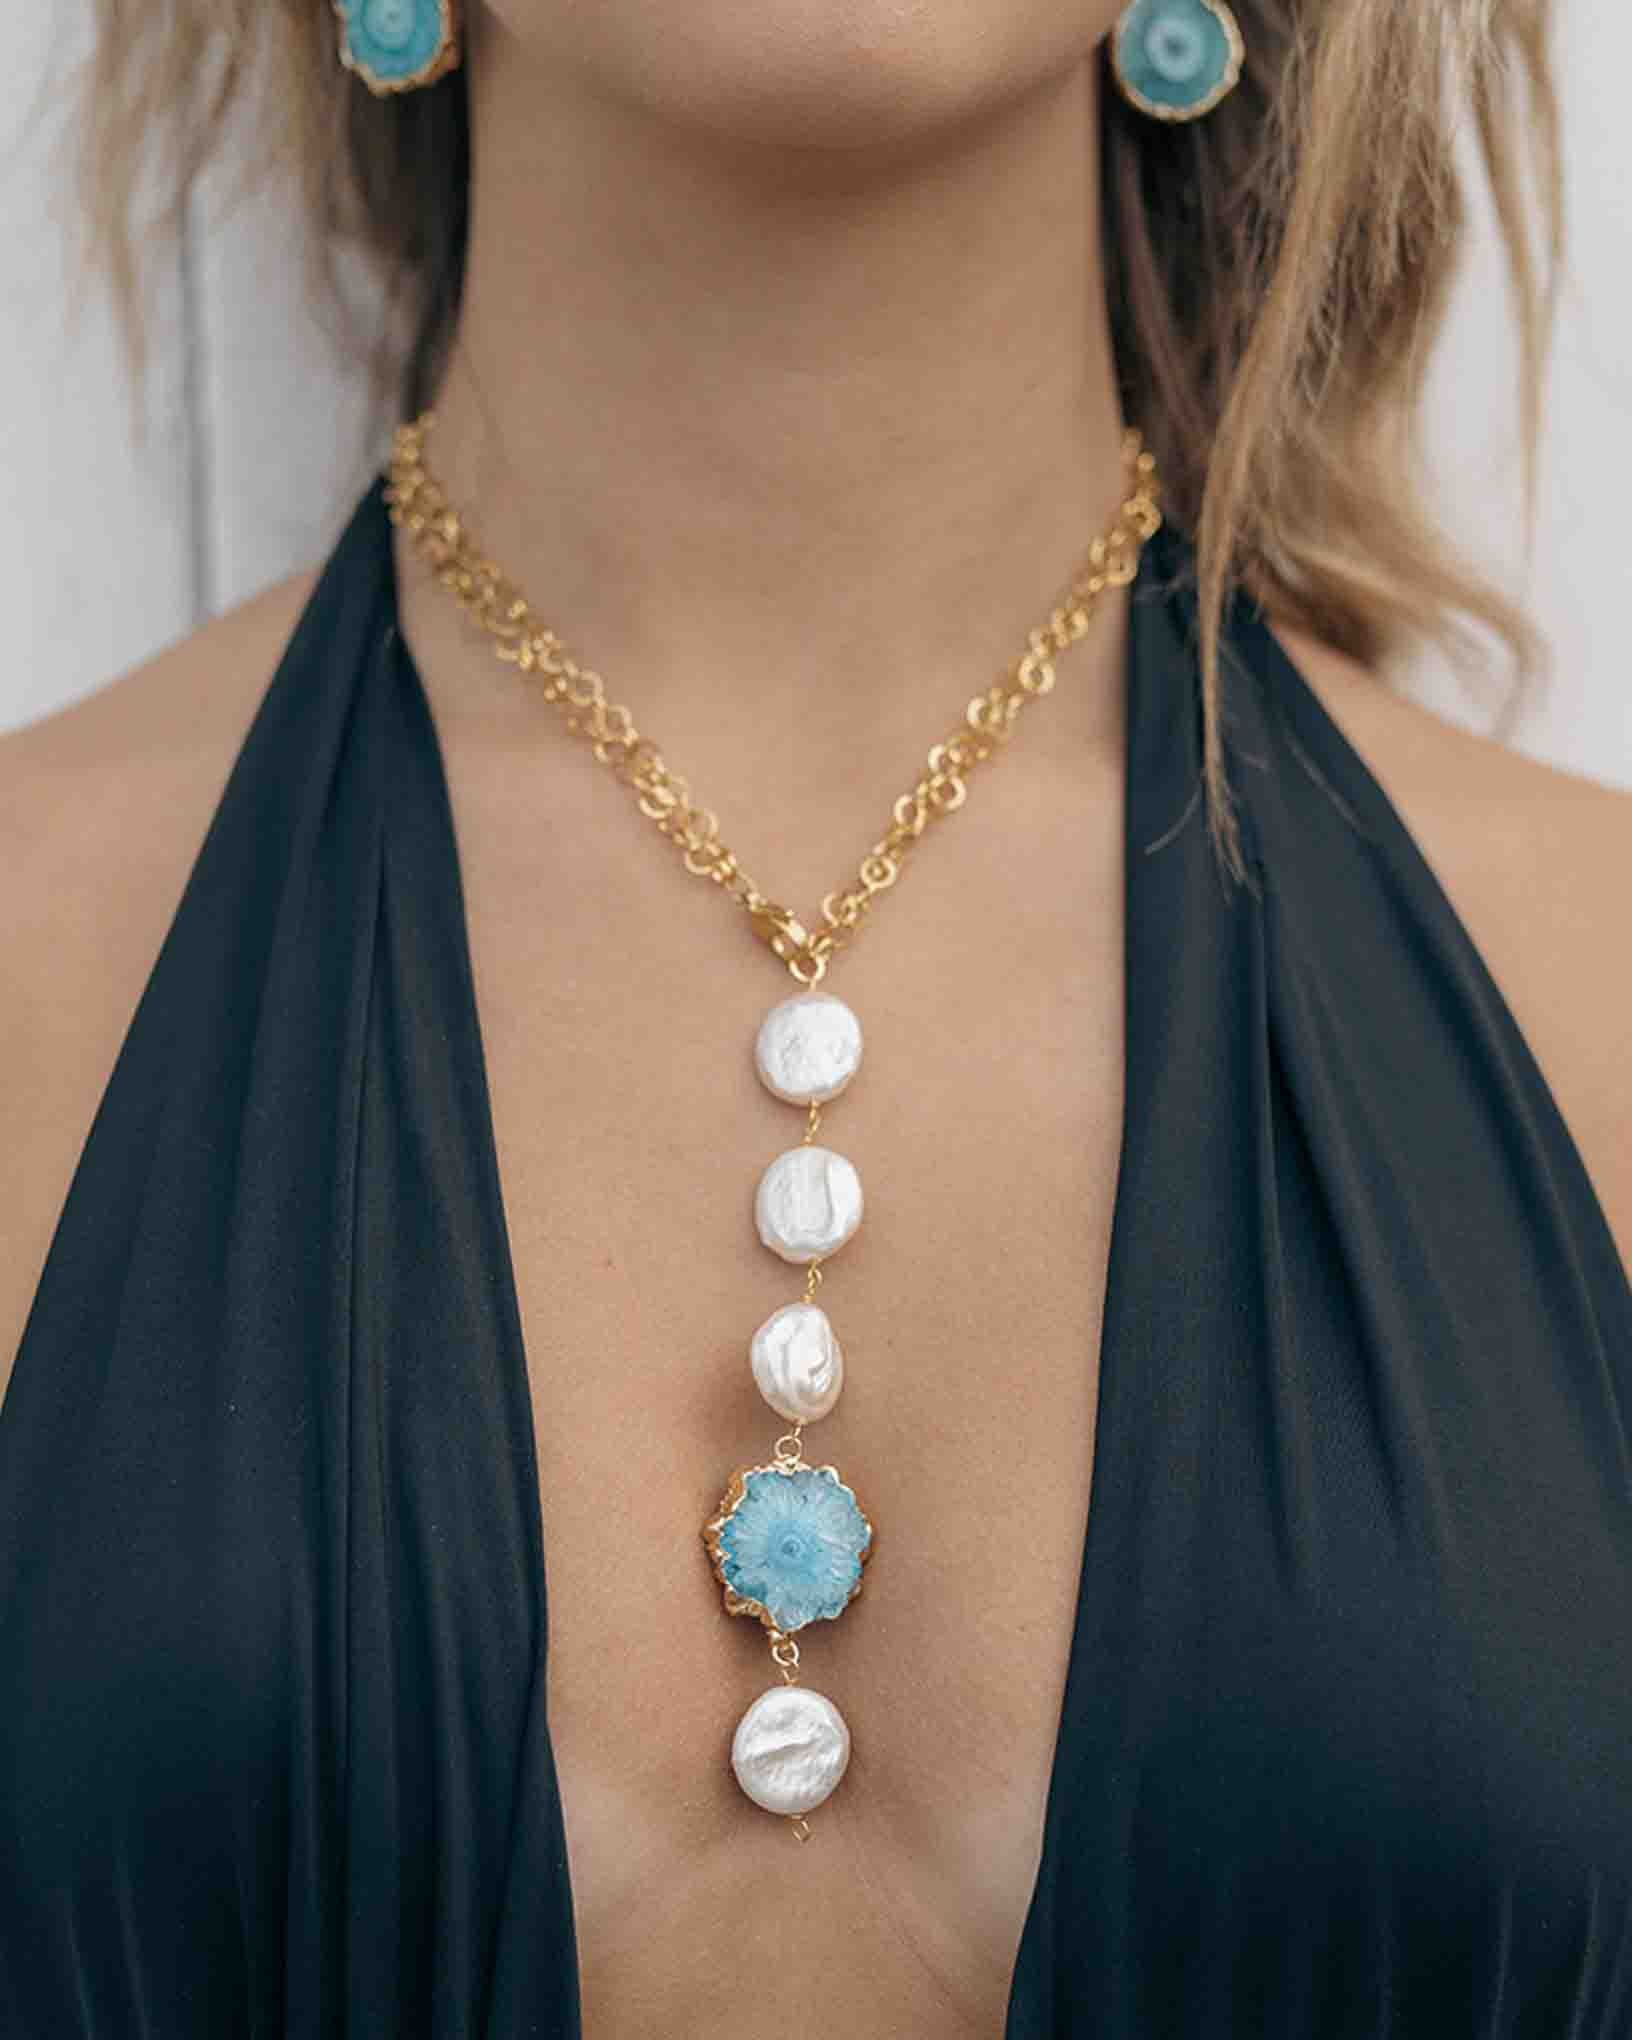 Halskette Nettuno aus der Kollektion Galassia von Donna Rachele Jewelry